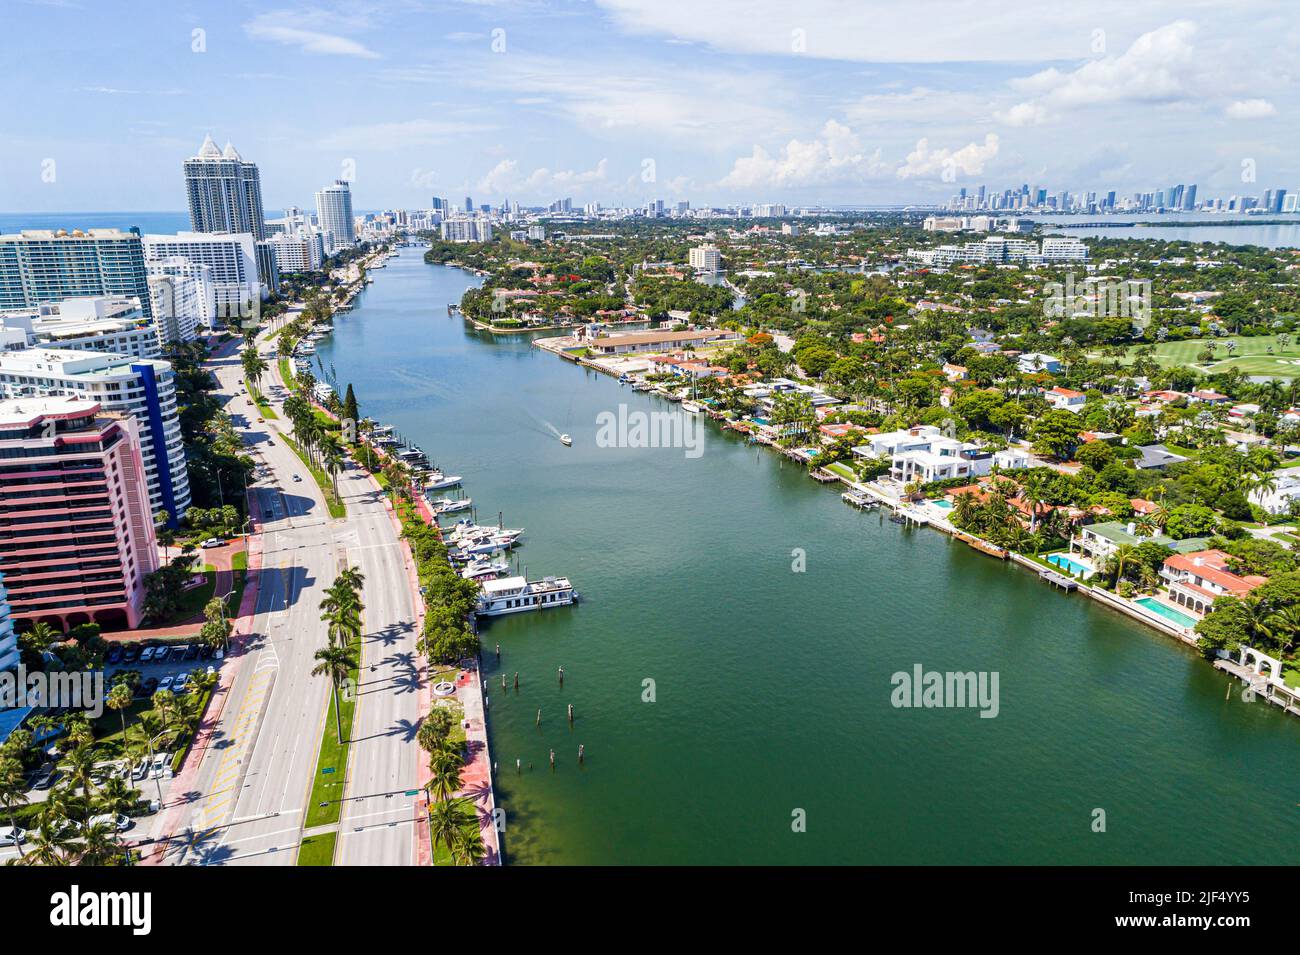 Miami Beach Florida, Luftaufnahme von oben, Collins Avenue Indian Creek La Gorce Island Villen am Wasser Anwesen Häuser Häuser Residenzen, CI Stockfoto